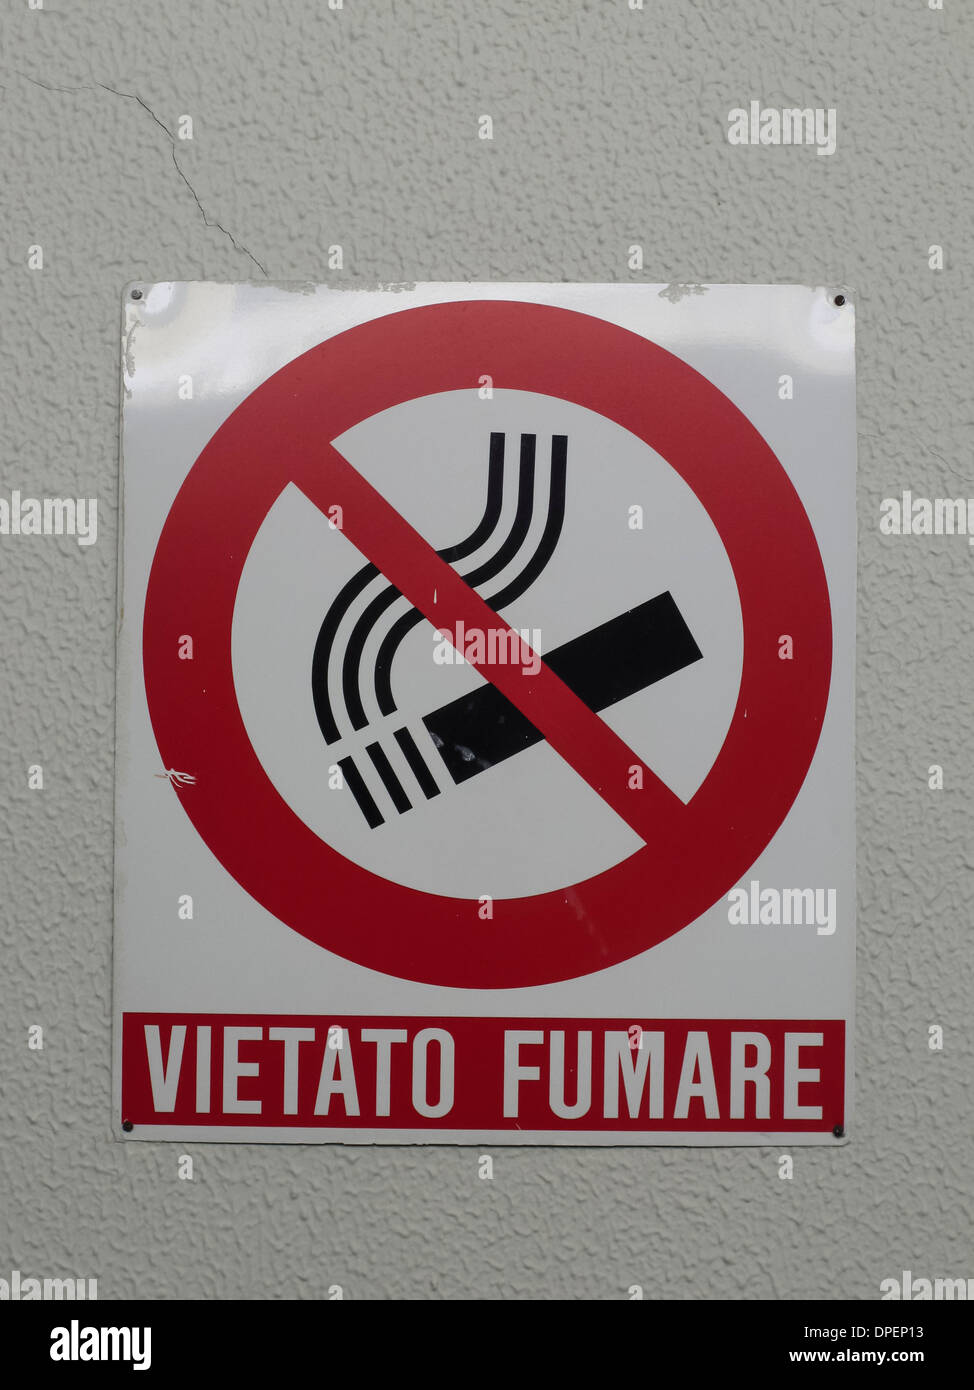 vietato fumare,no smoking Stock Photo